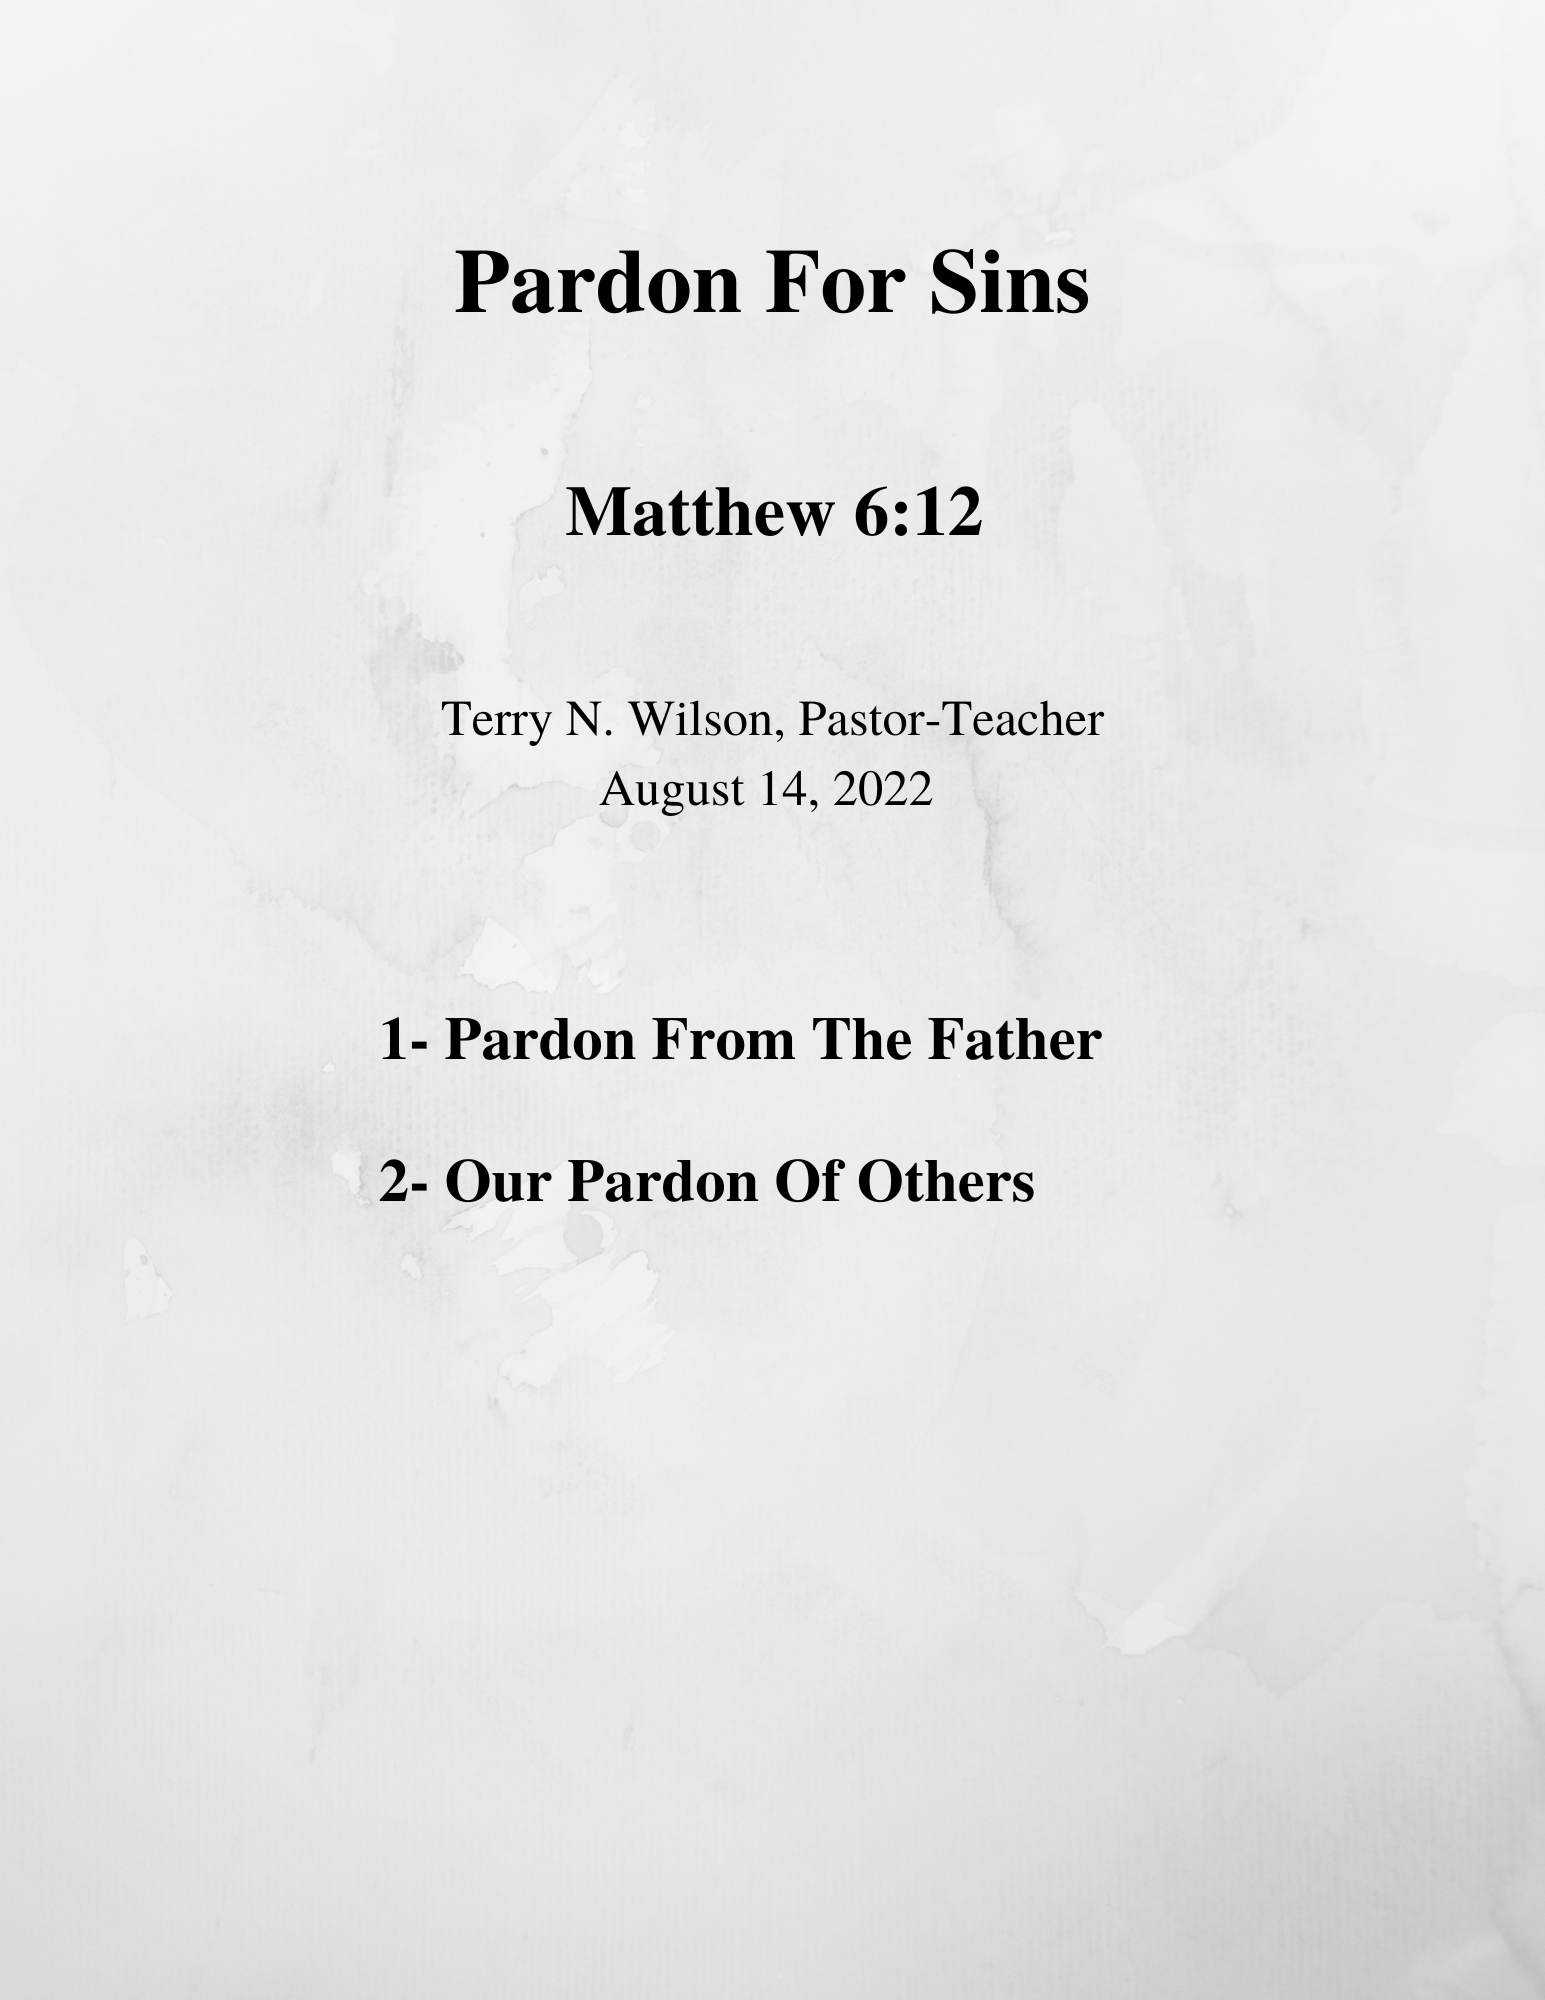 08.14.22 Sermon Notes